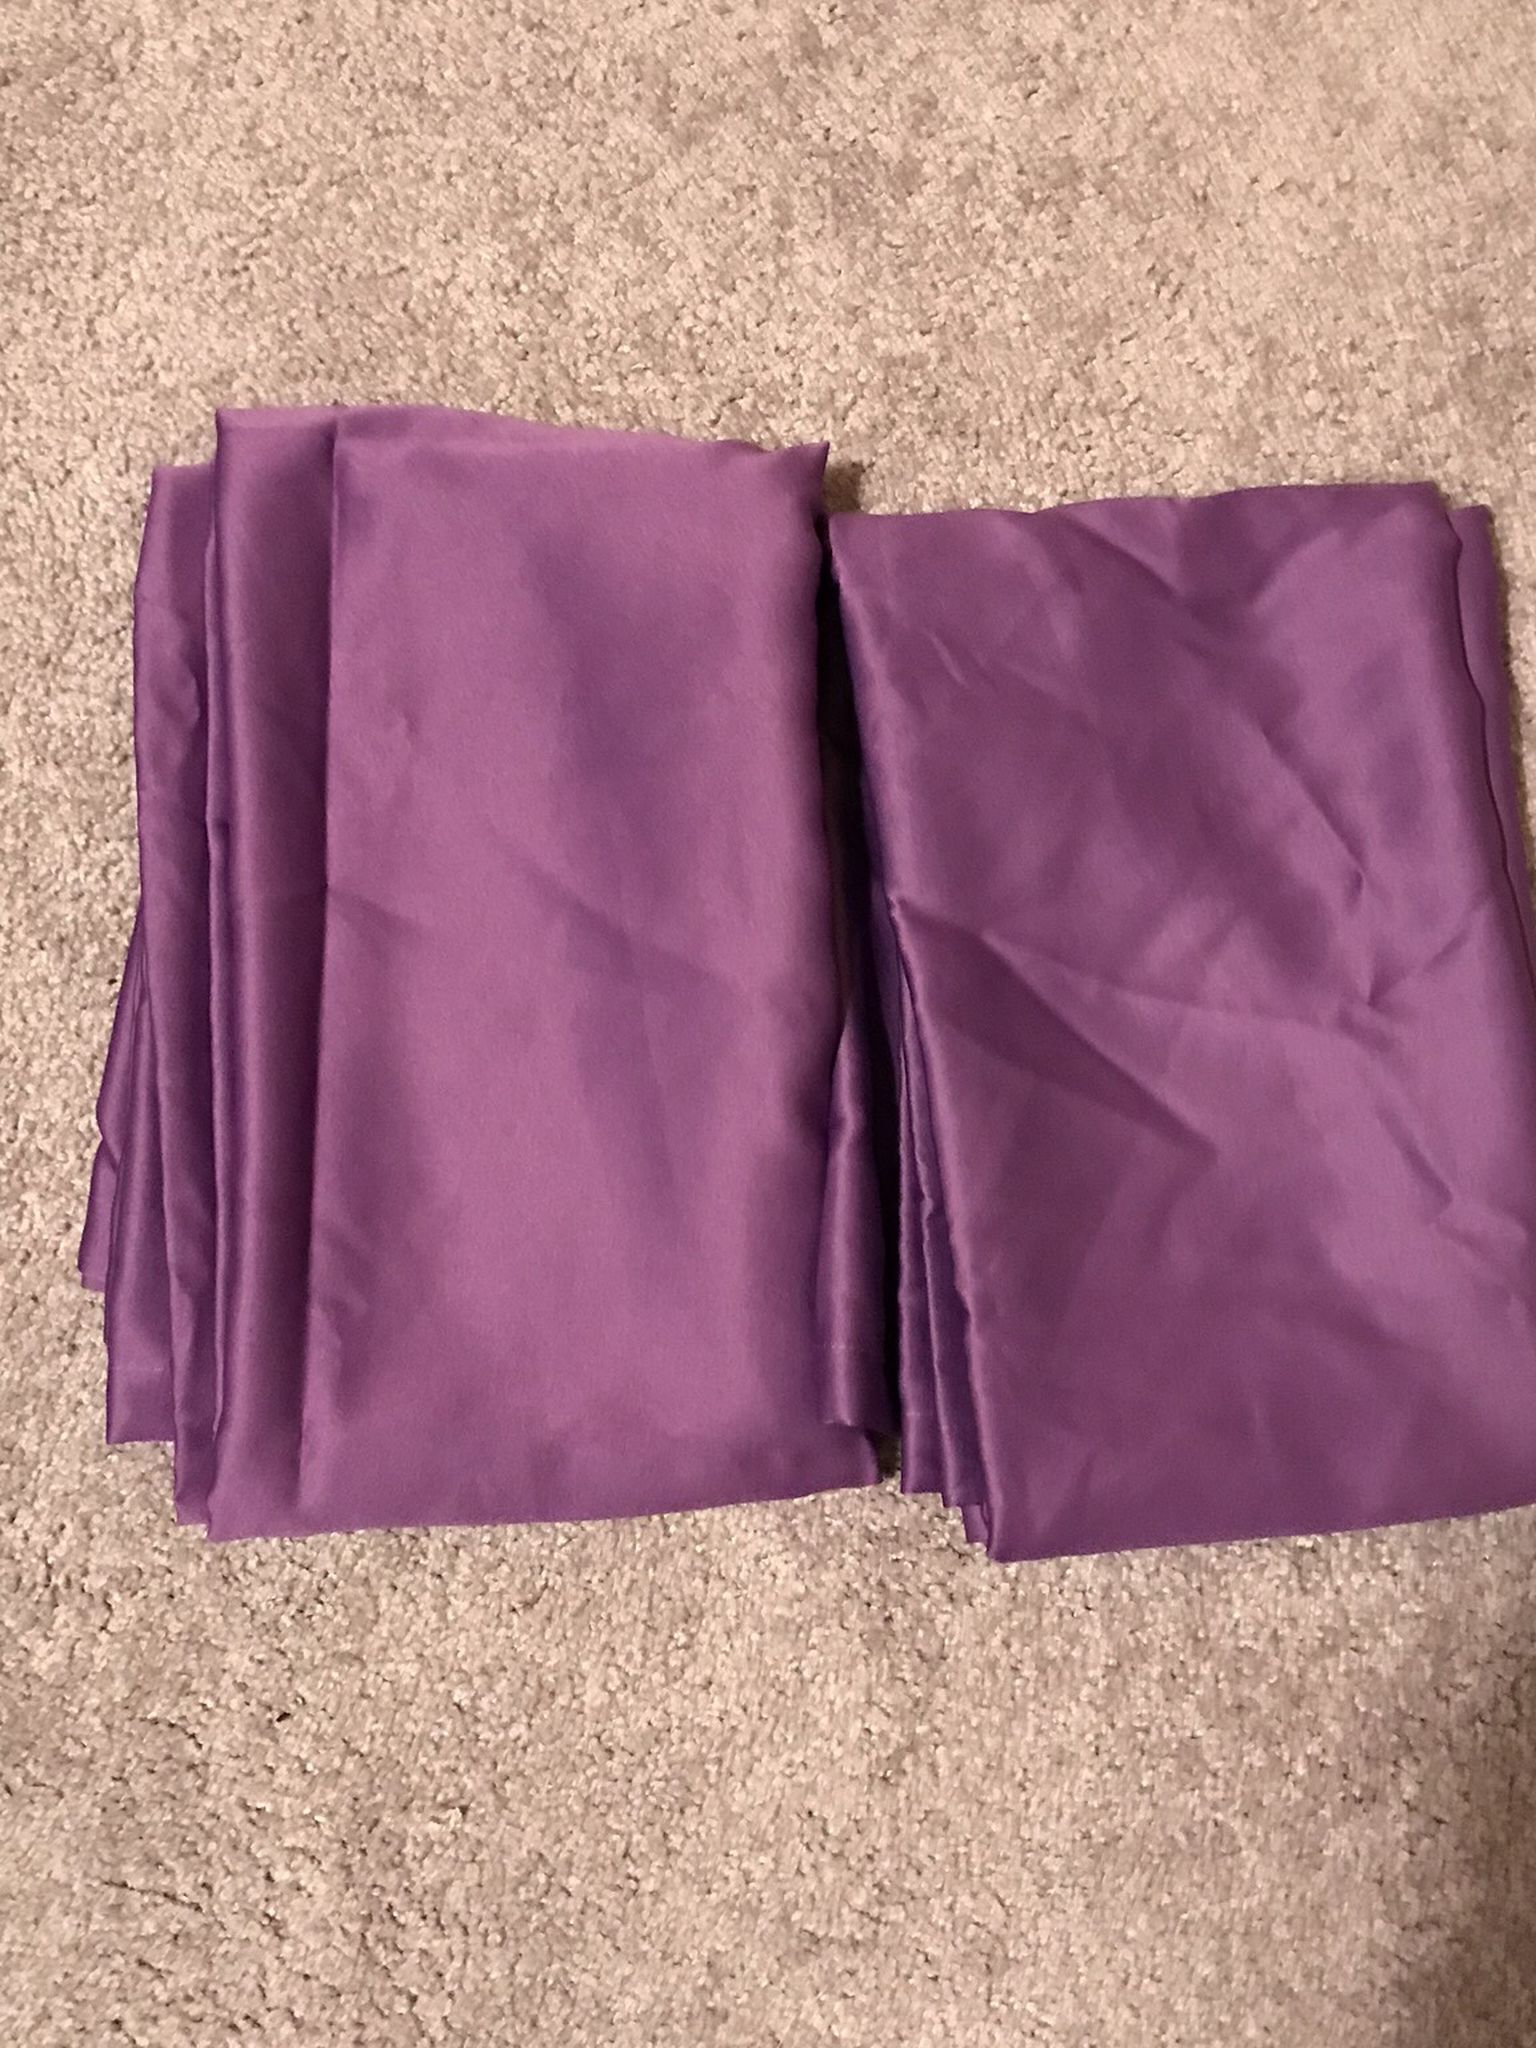 Set Of Purple Curtains.